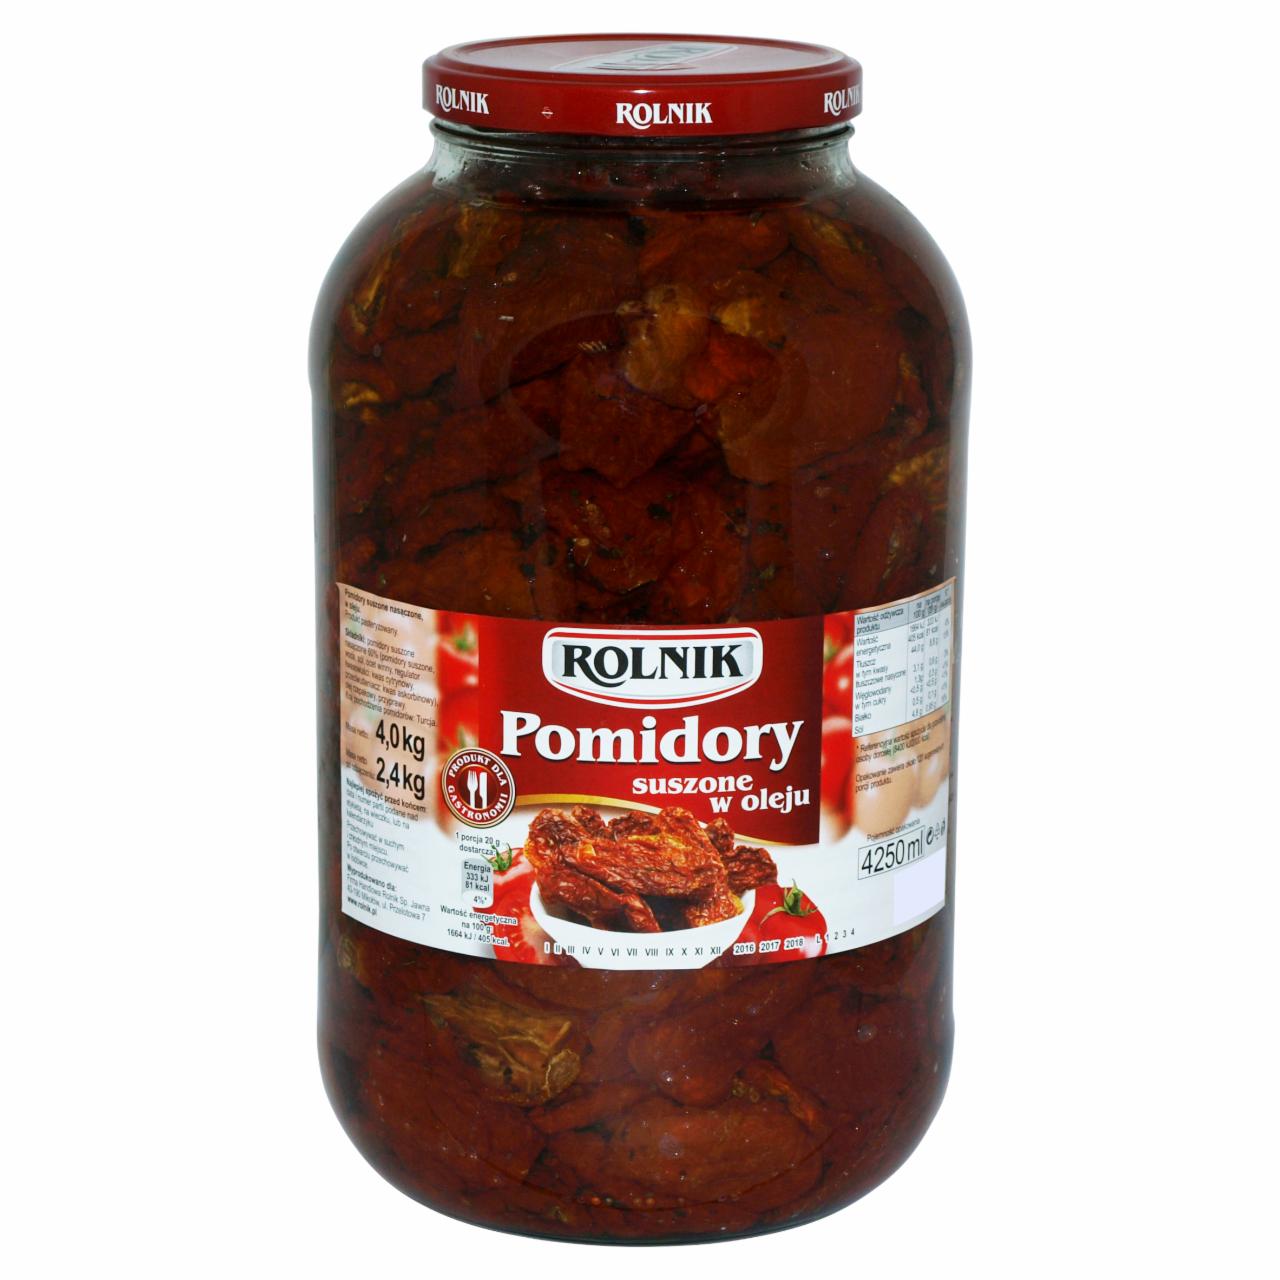 Zdjęcia - Rolnik Pomidory suszone w oleju 4,0 kg